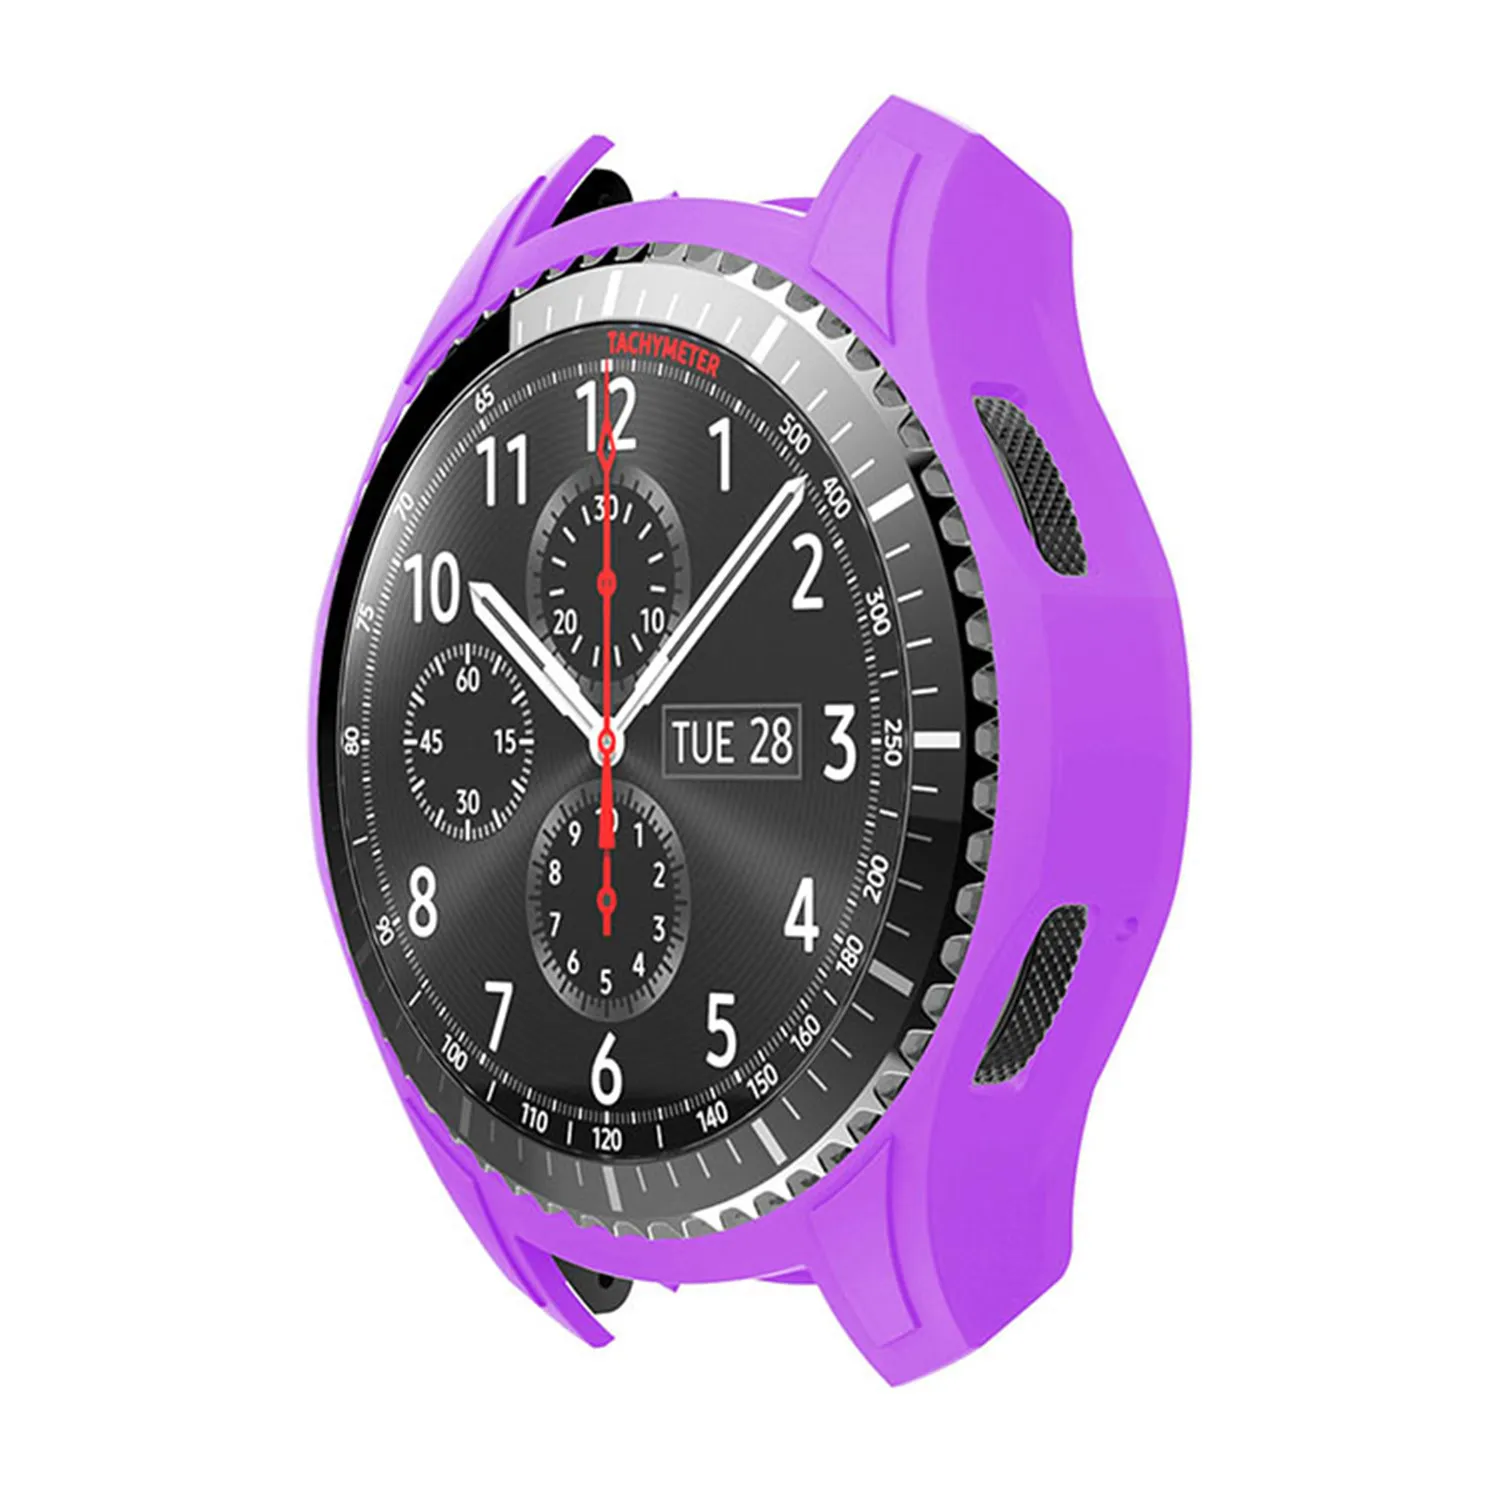 Мягкий силиконовый чехол для часов samsung Galaxy Watch 46 мм чехол для смарт часов оболочка для samsung gear S3 Frontier Cover